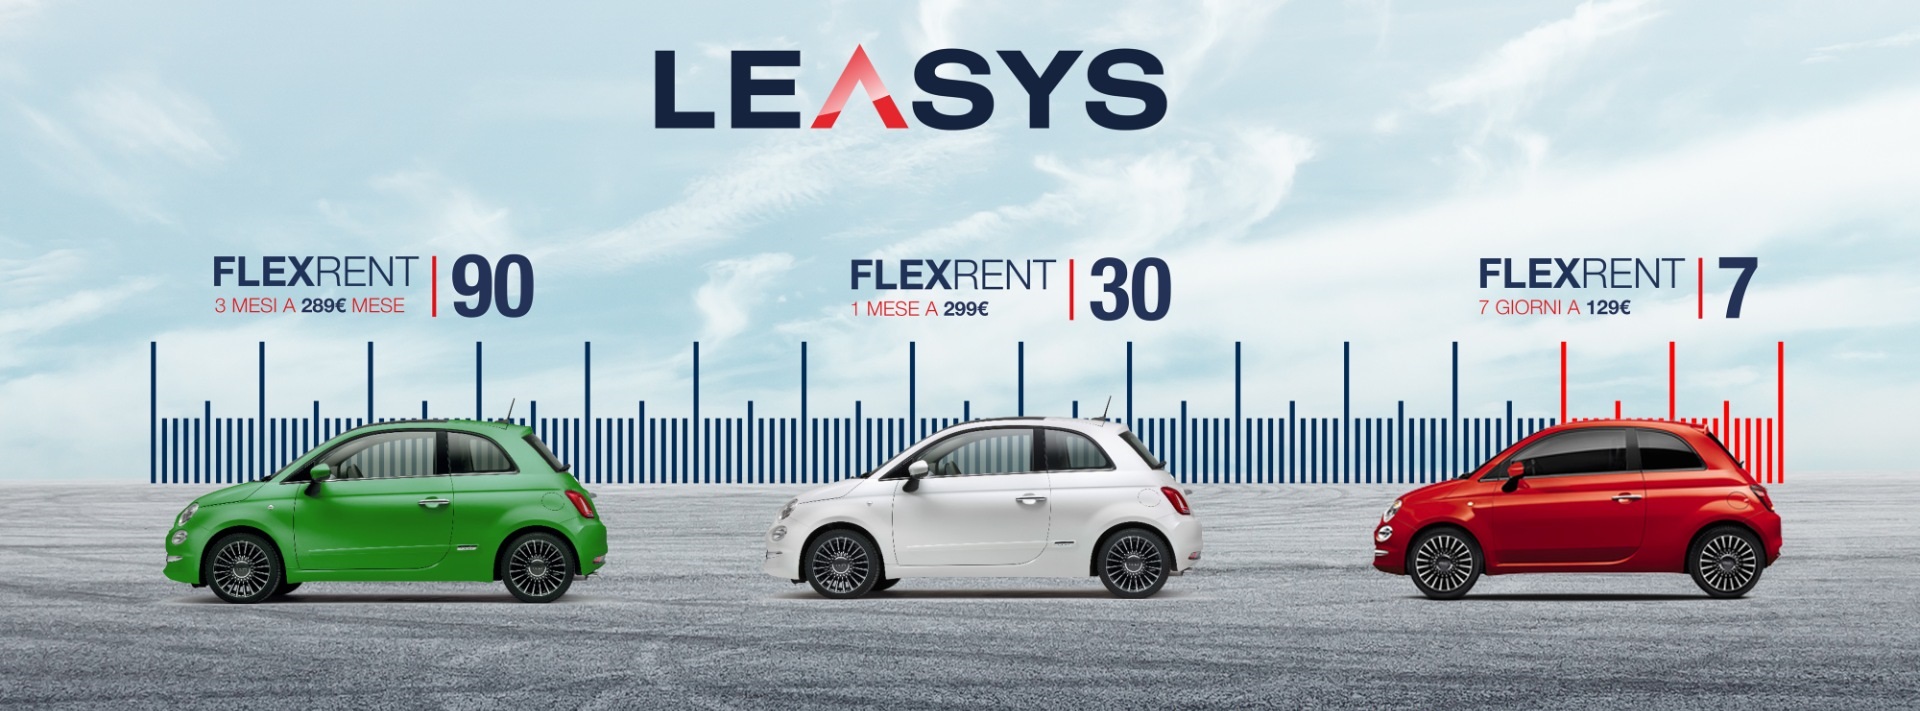 La mobilità Italiana riparte con Leasys FLEXRENT